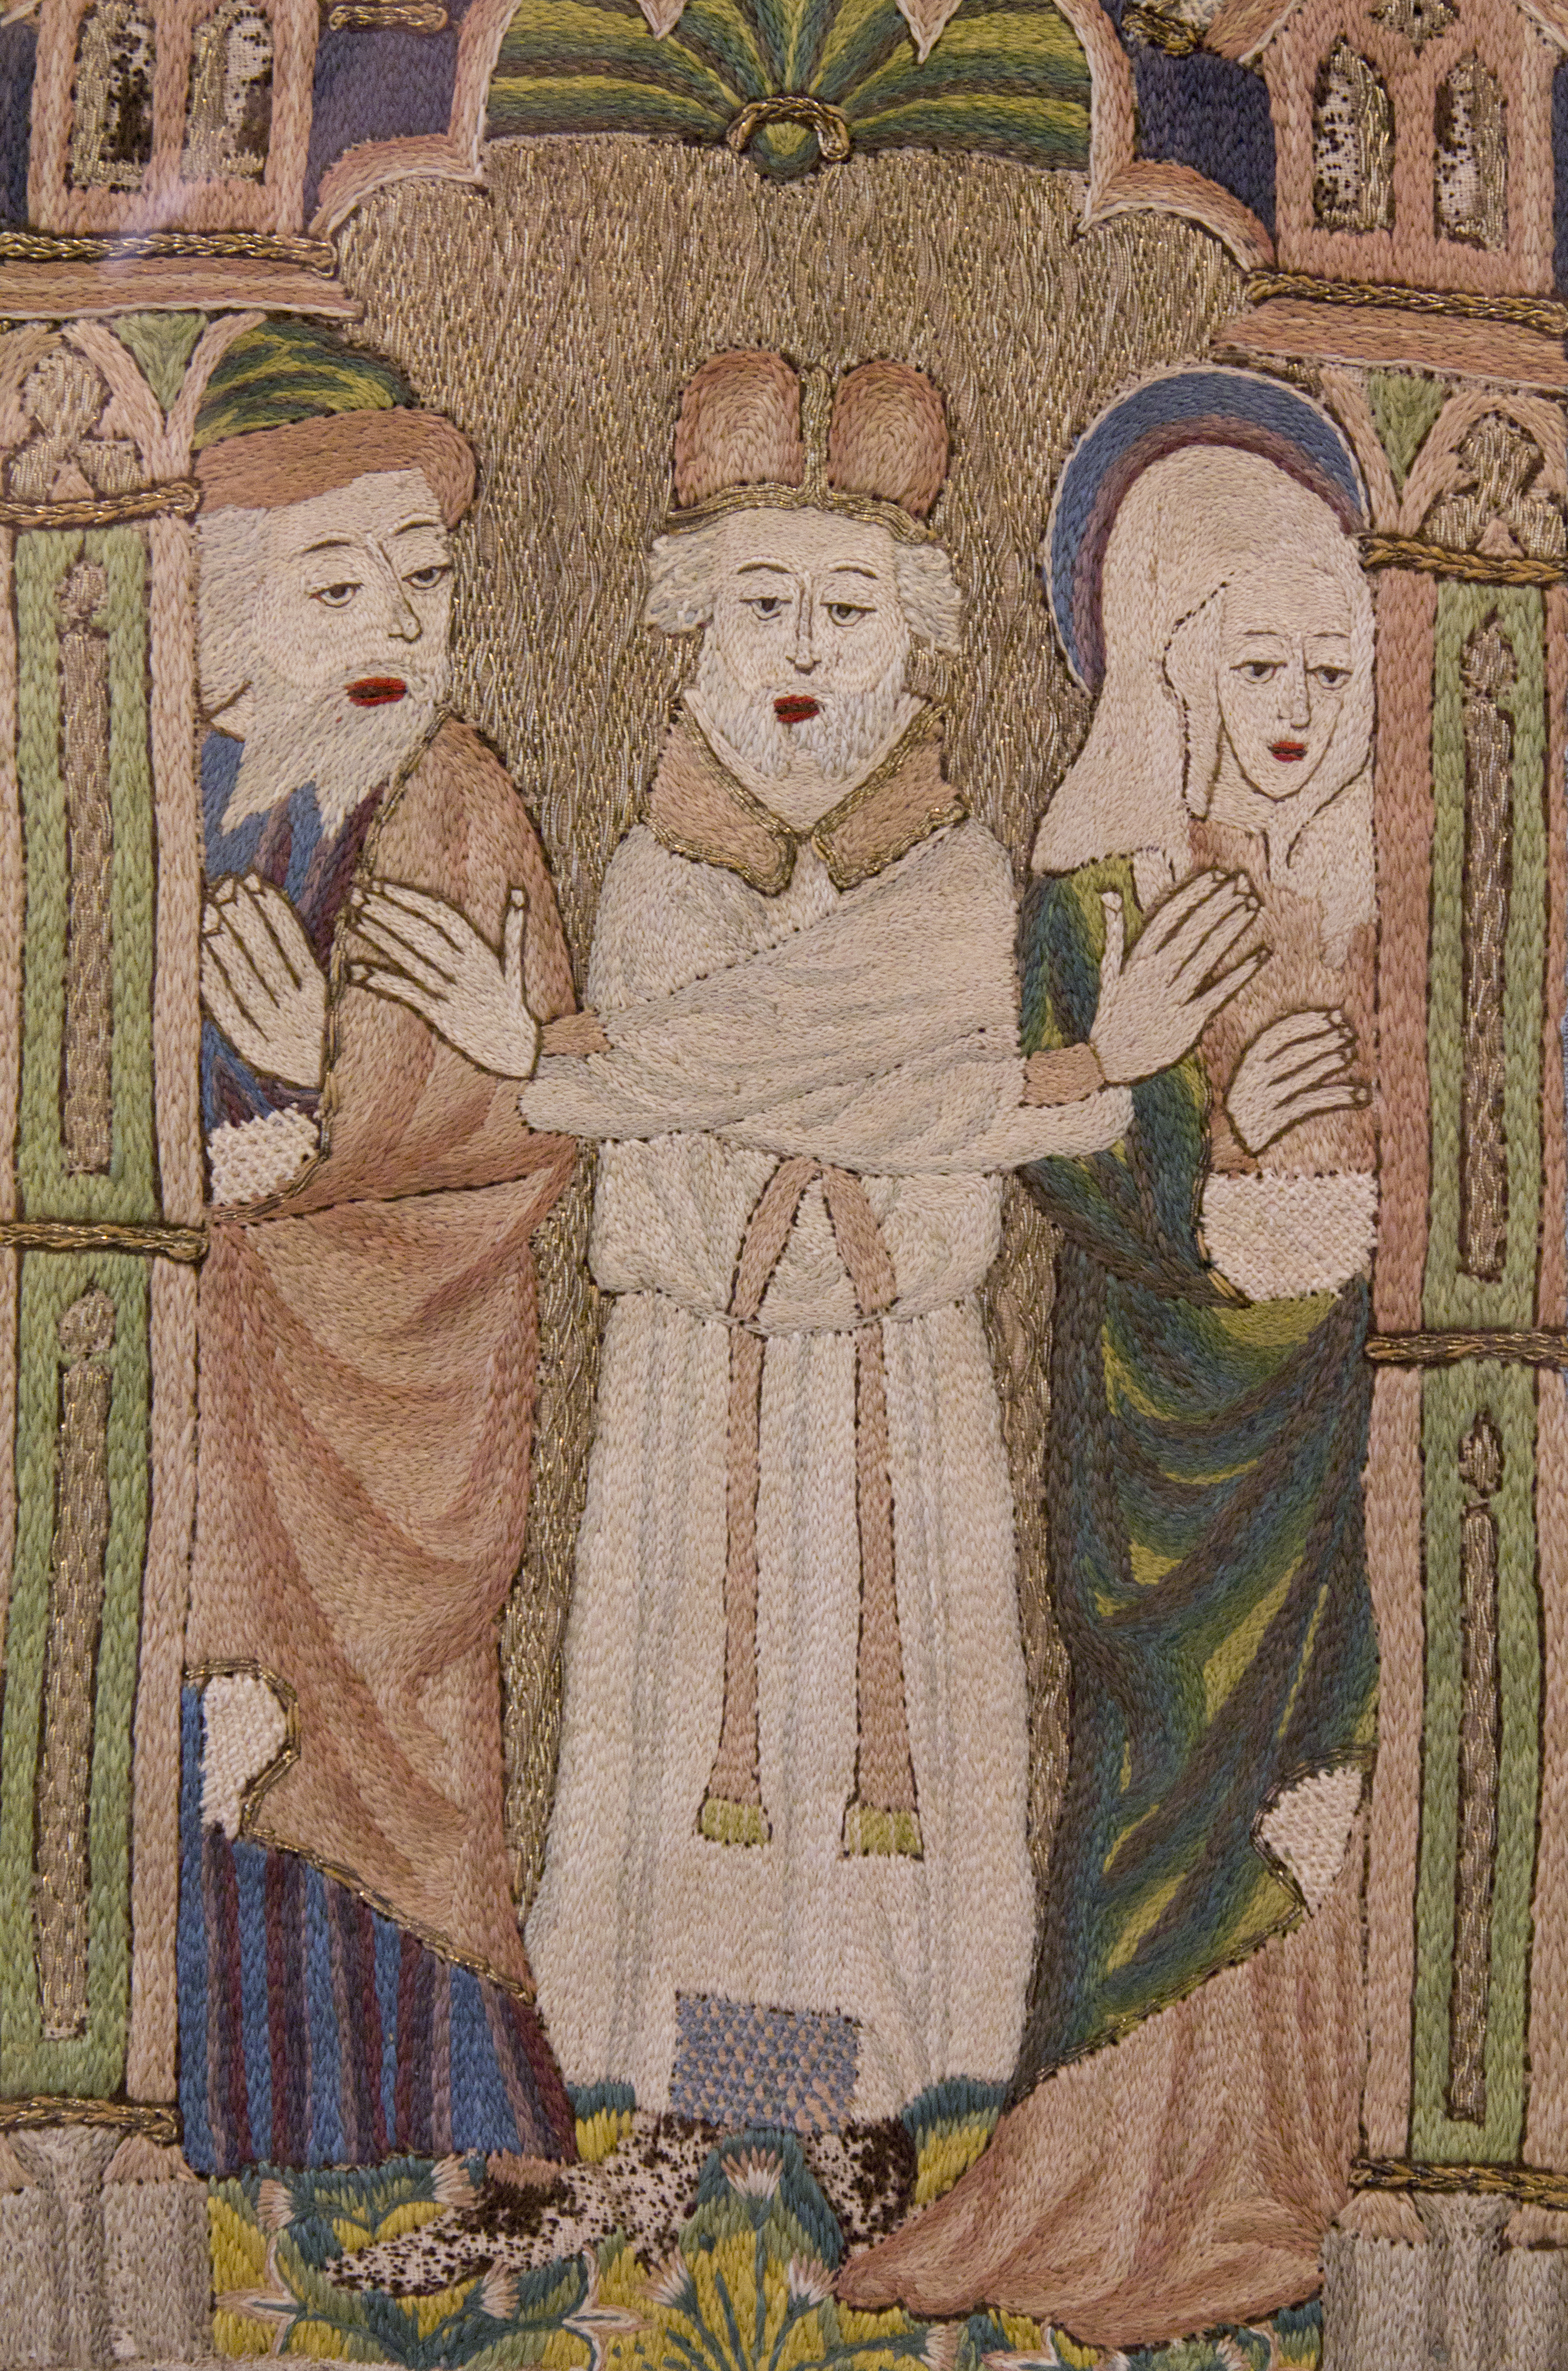 Mariage de sainte Anne et saint Joachim – Burrell Collection in Glasgow.